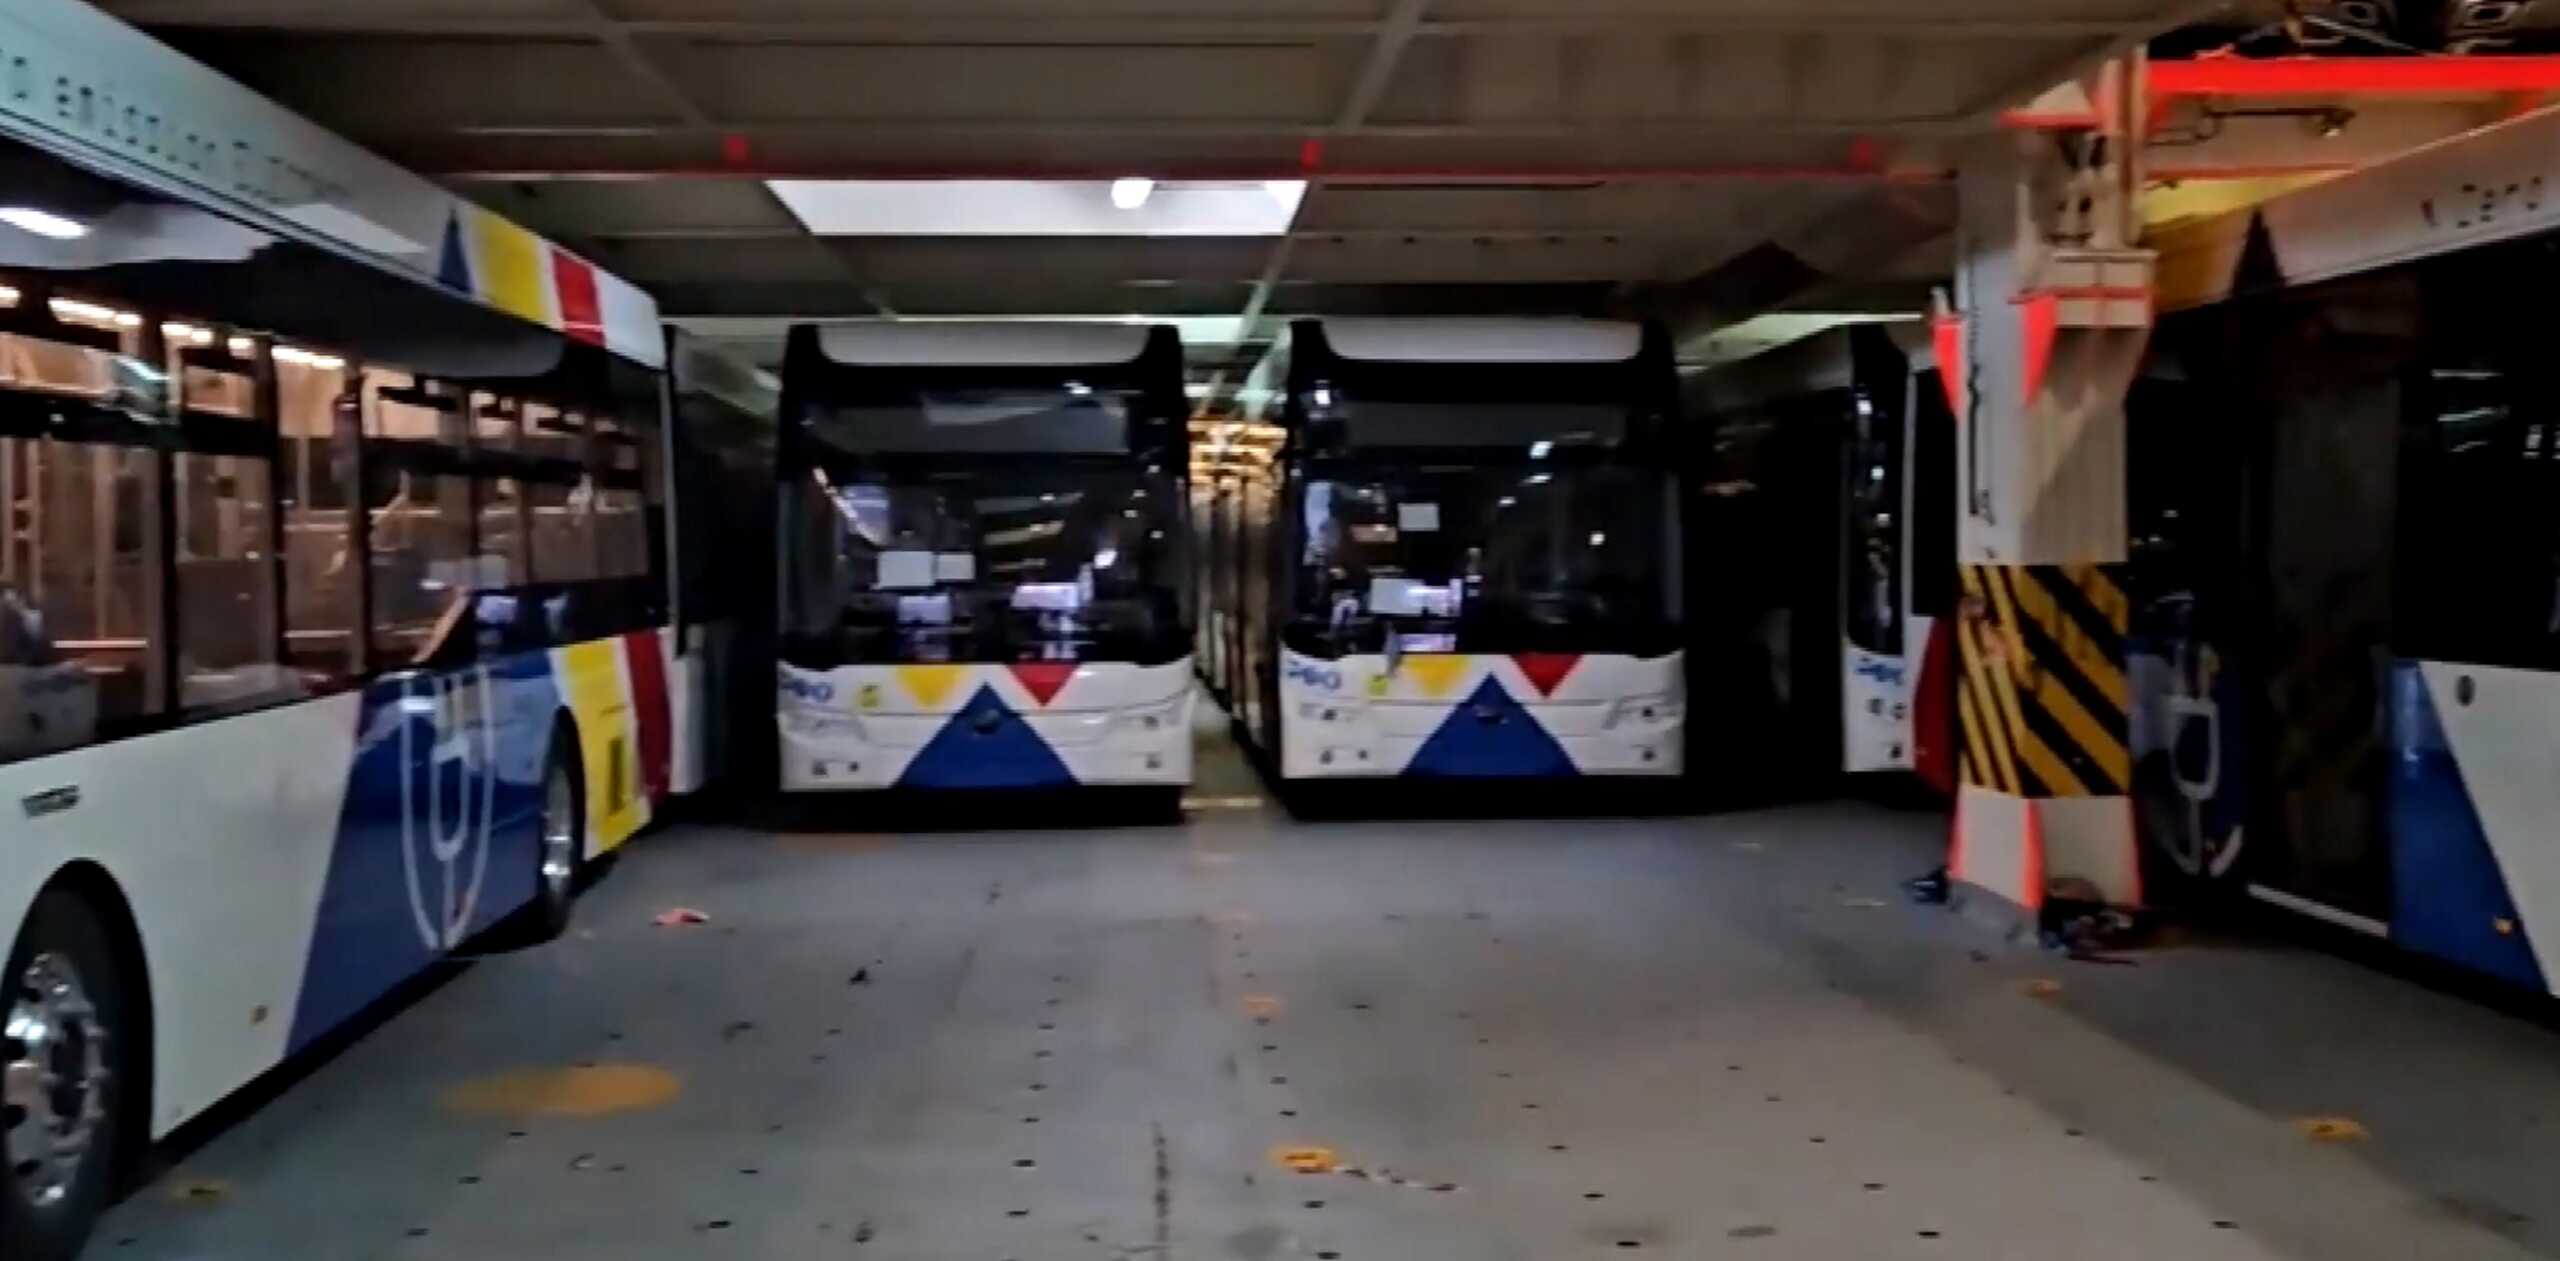 Θεσσαλονίκη: Αυτά είναι τα 110 νέα ηλεκτρικά λεωφορεία που έφτασαν από την Κίνα